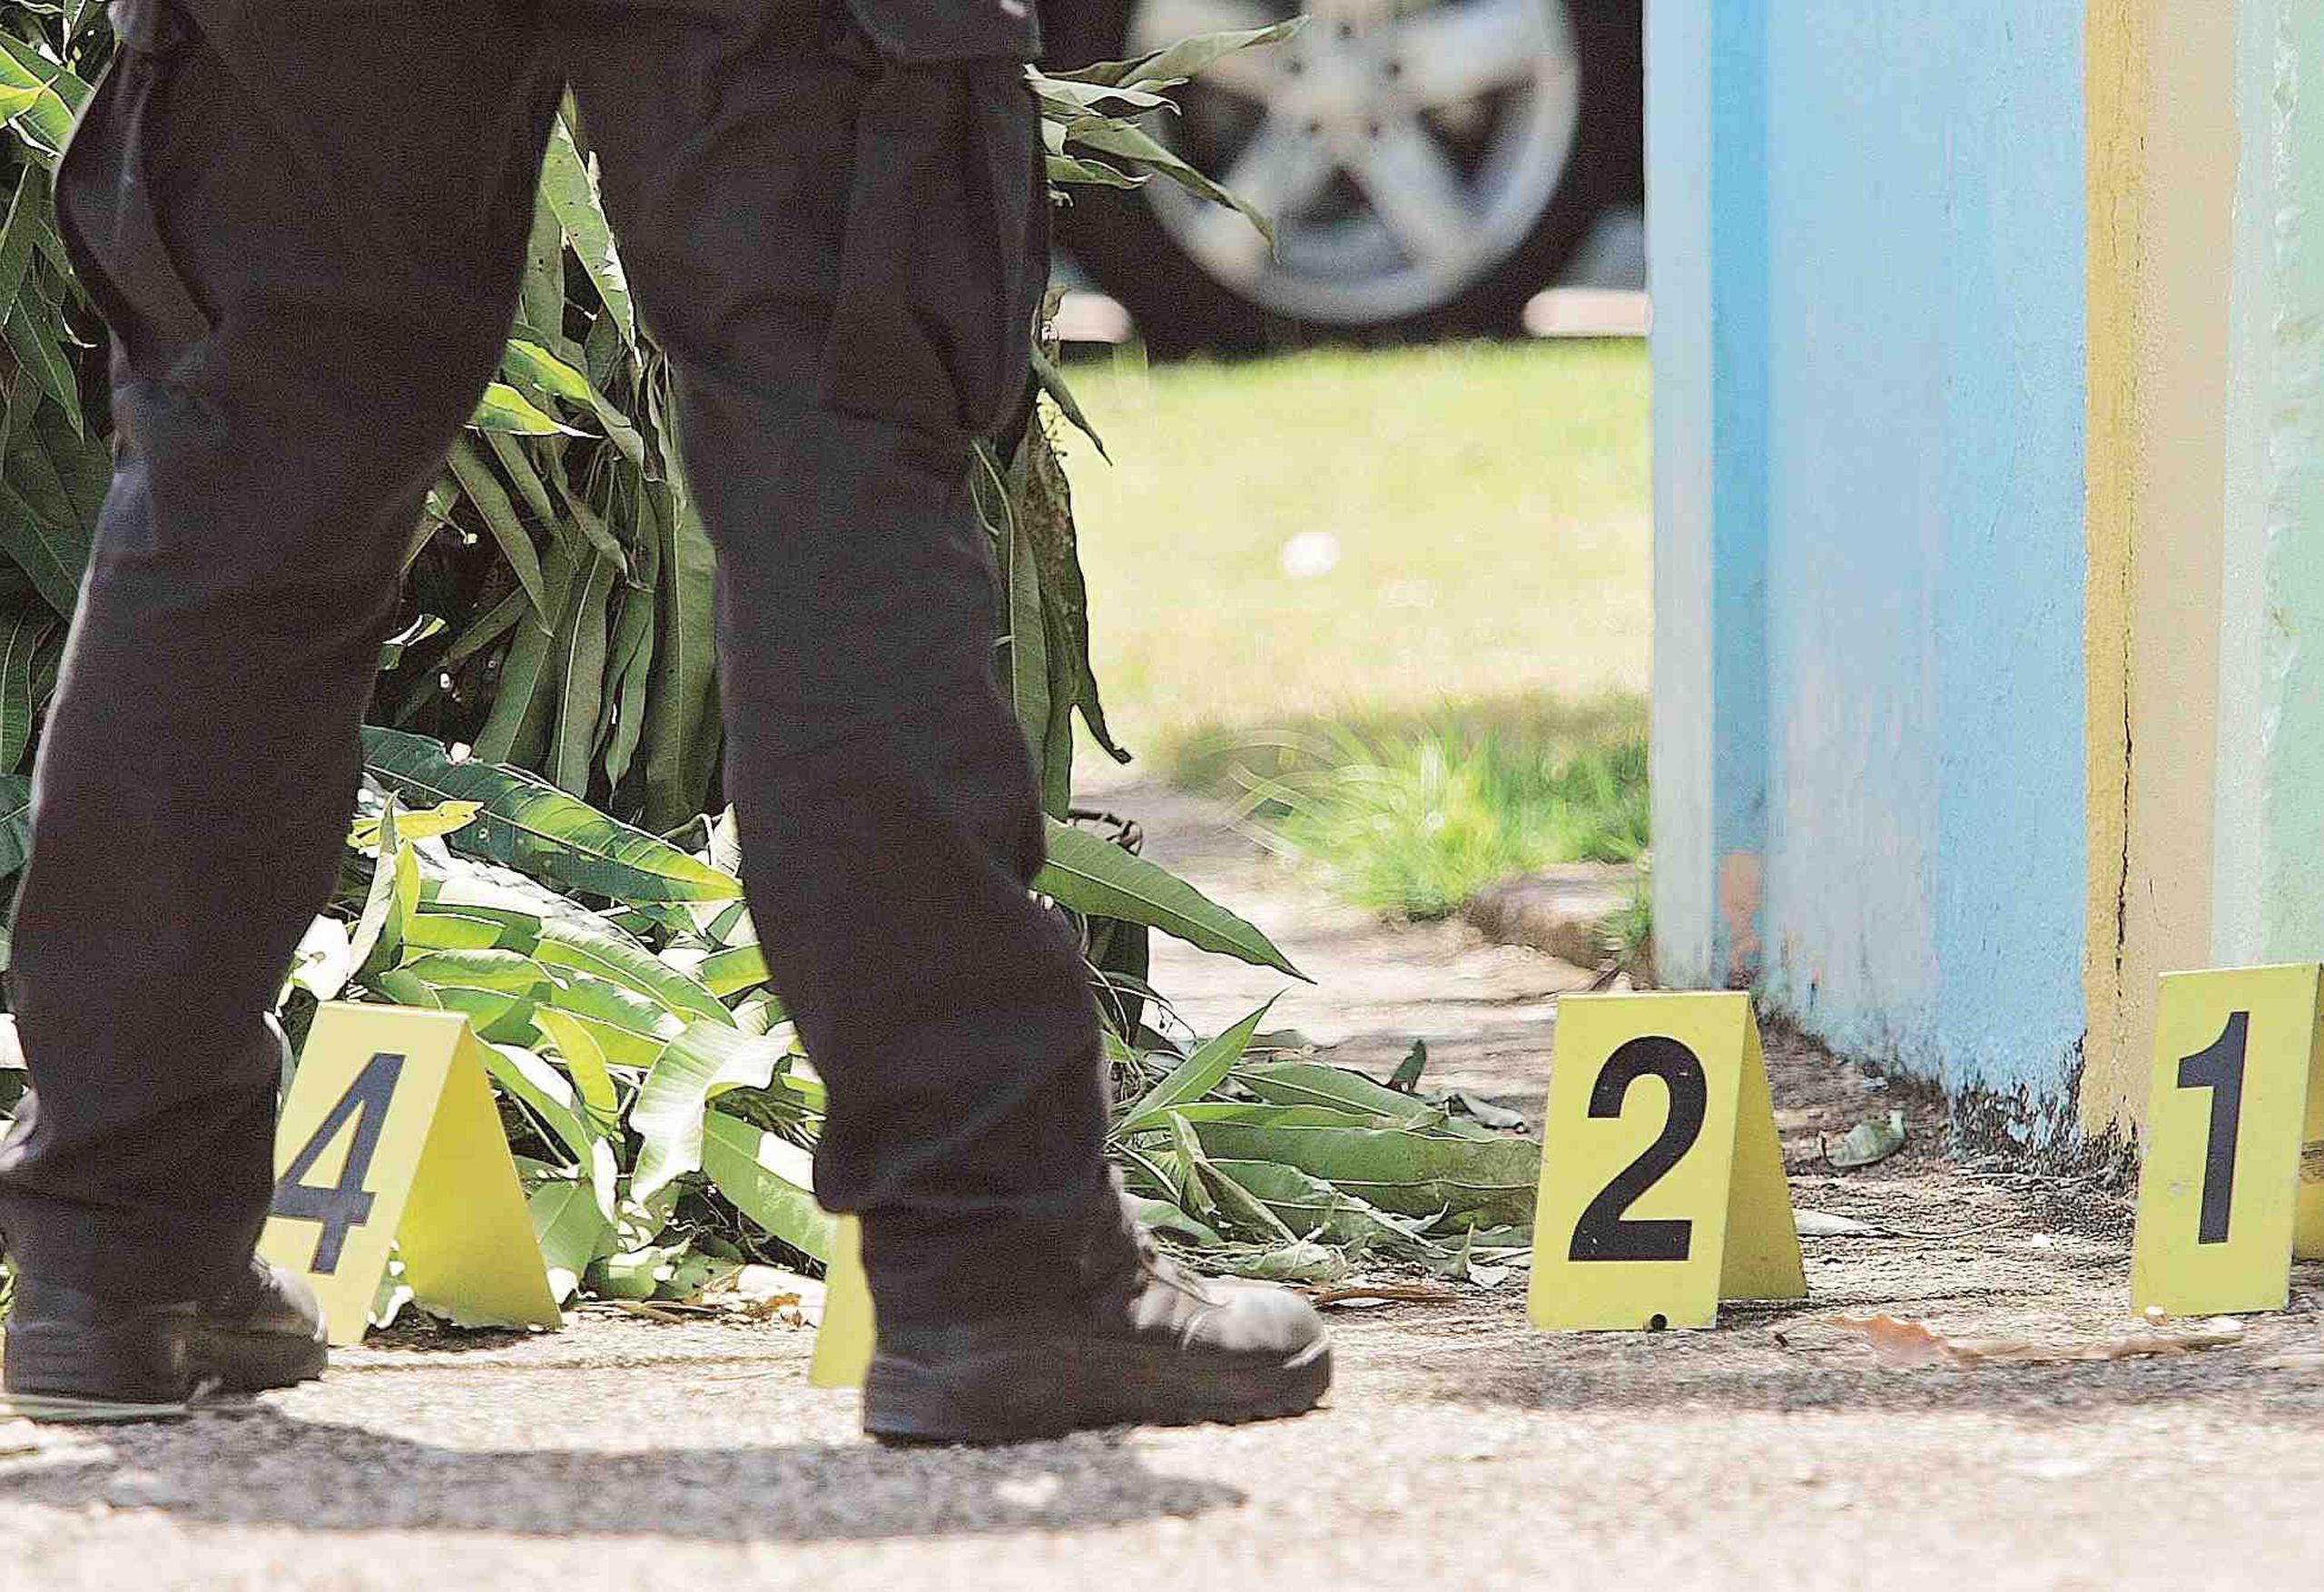 n la escena del crimen de Puerto Nuevo, se ocuparon 80 casquillos de bala calibre .40, 9 milímetros y .223.